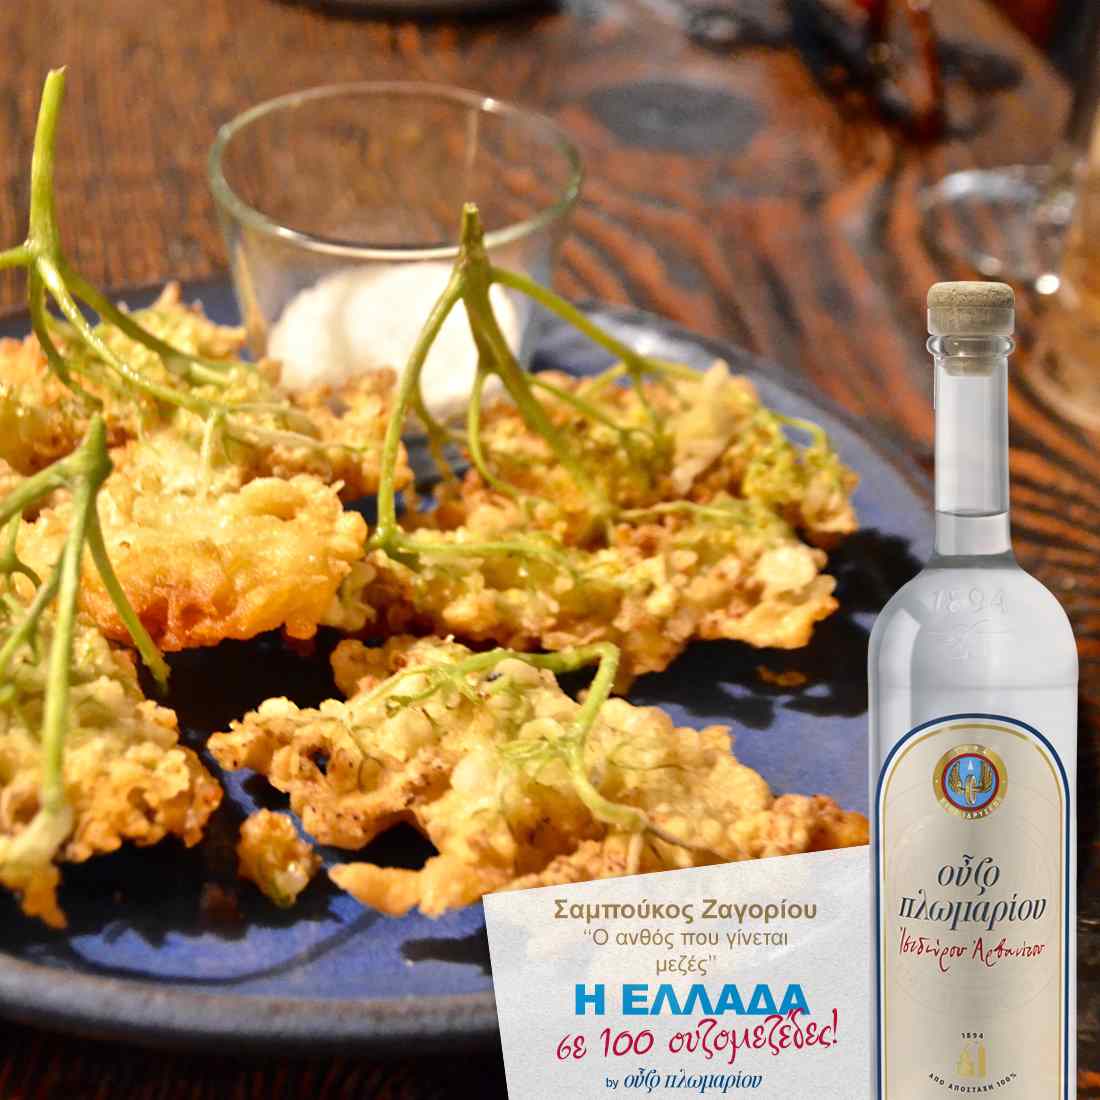 Σαμπούκος από το Ζαγόρι - Ουζομεζέδες - Greek Gastronomy Guide